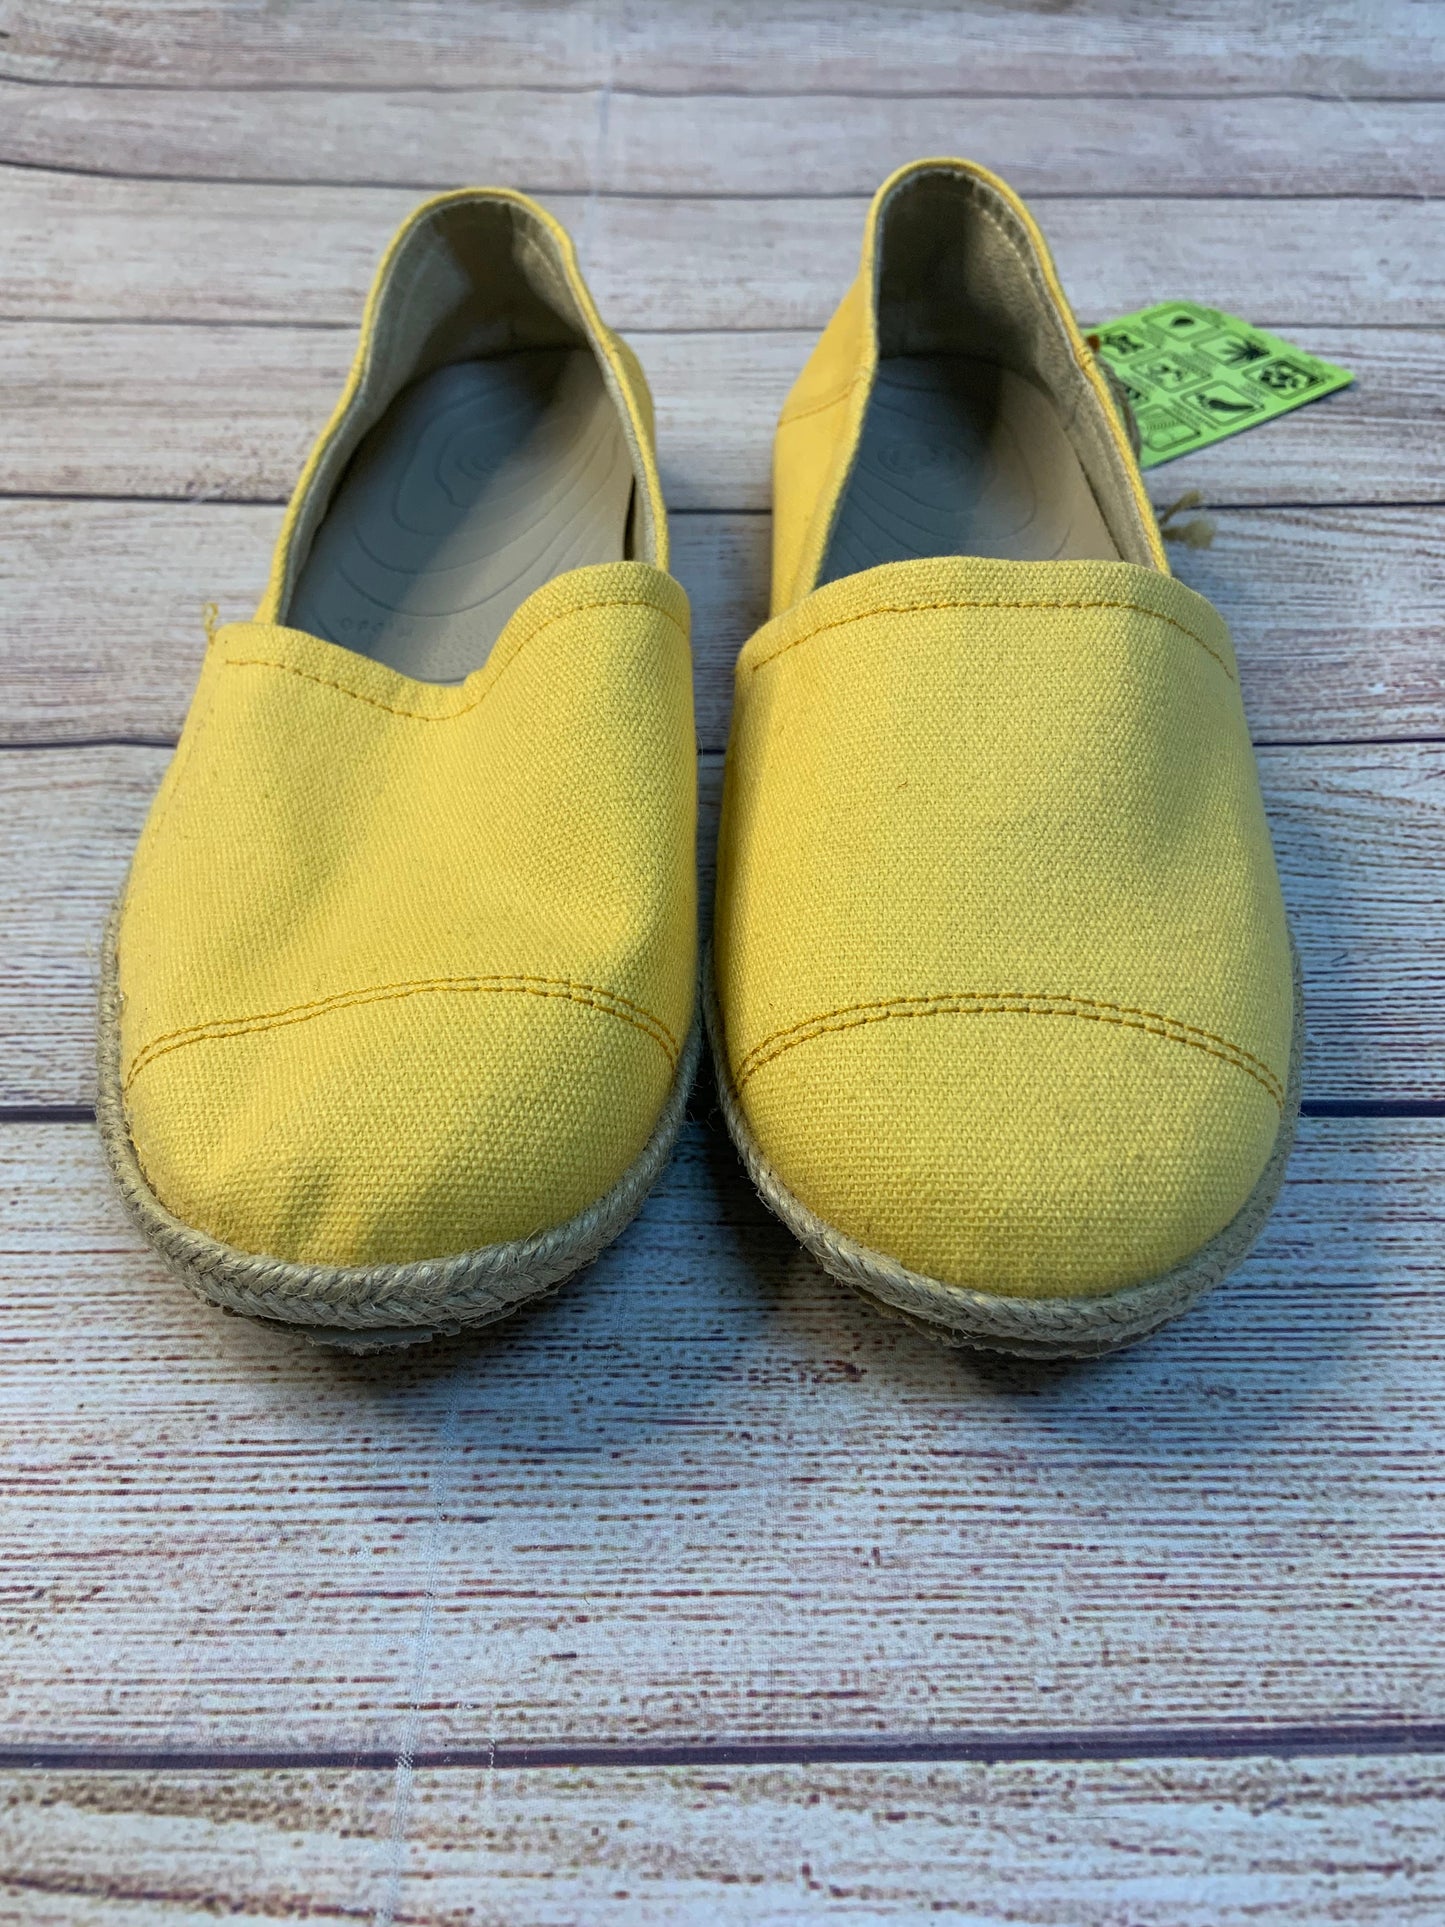 Shoes Flats Espadrille By Crocs  Size: 7